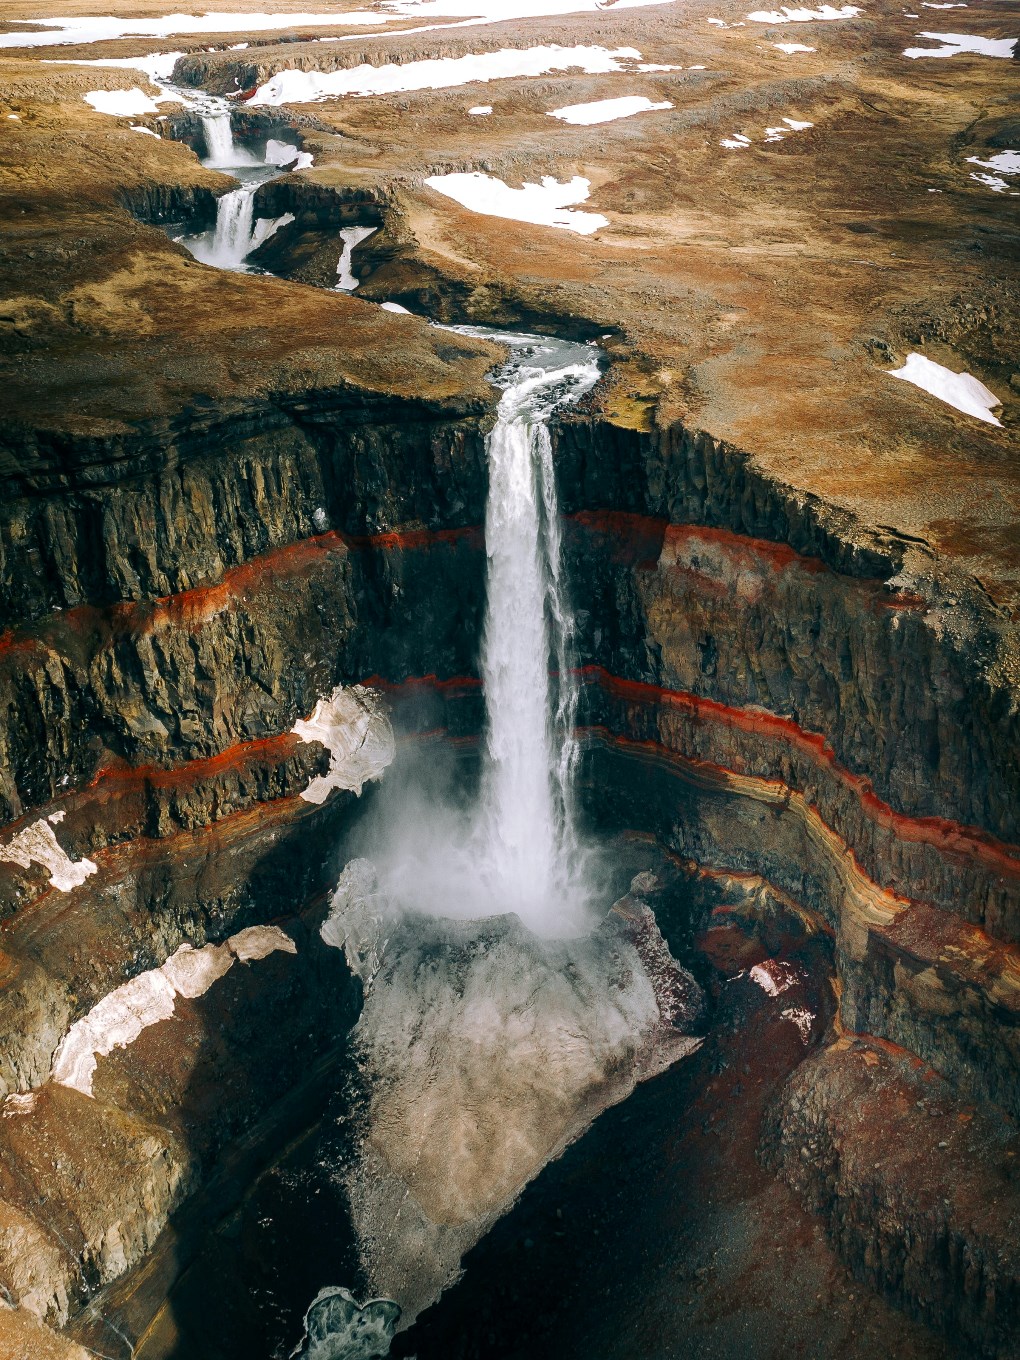 Si visitas el este de Islandia, no olvides incluir la cascada de Hengifoss en tu itinerario